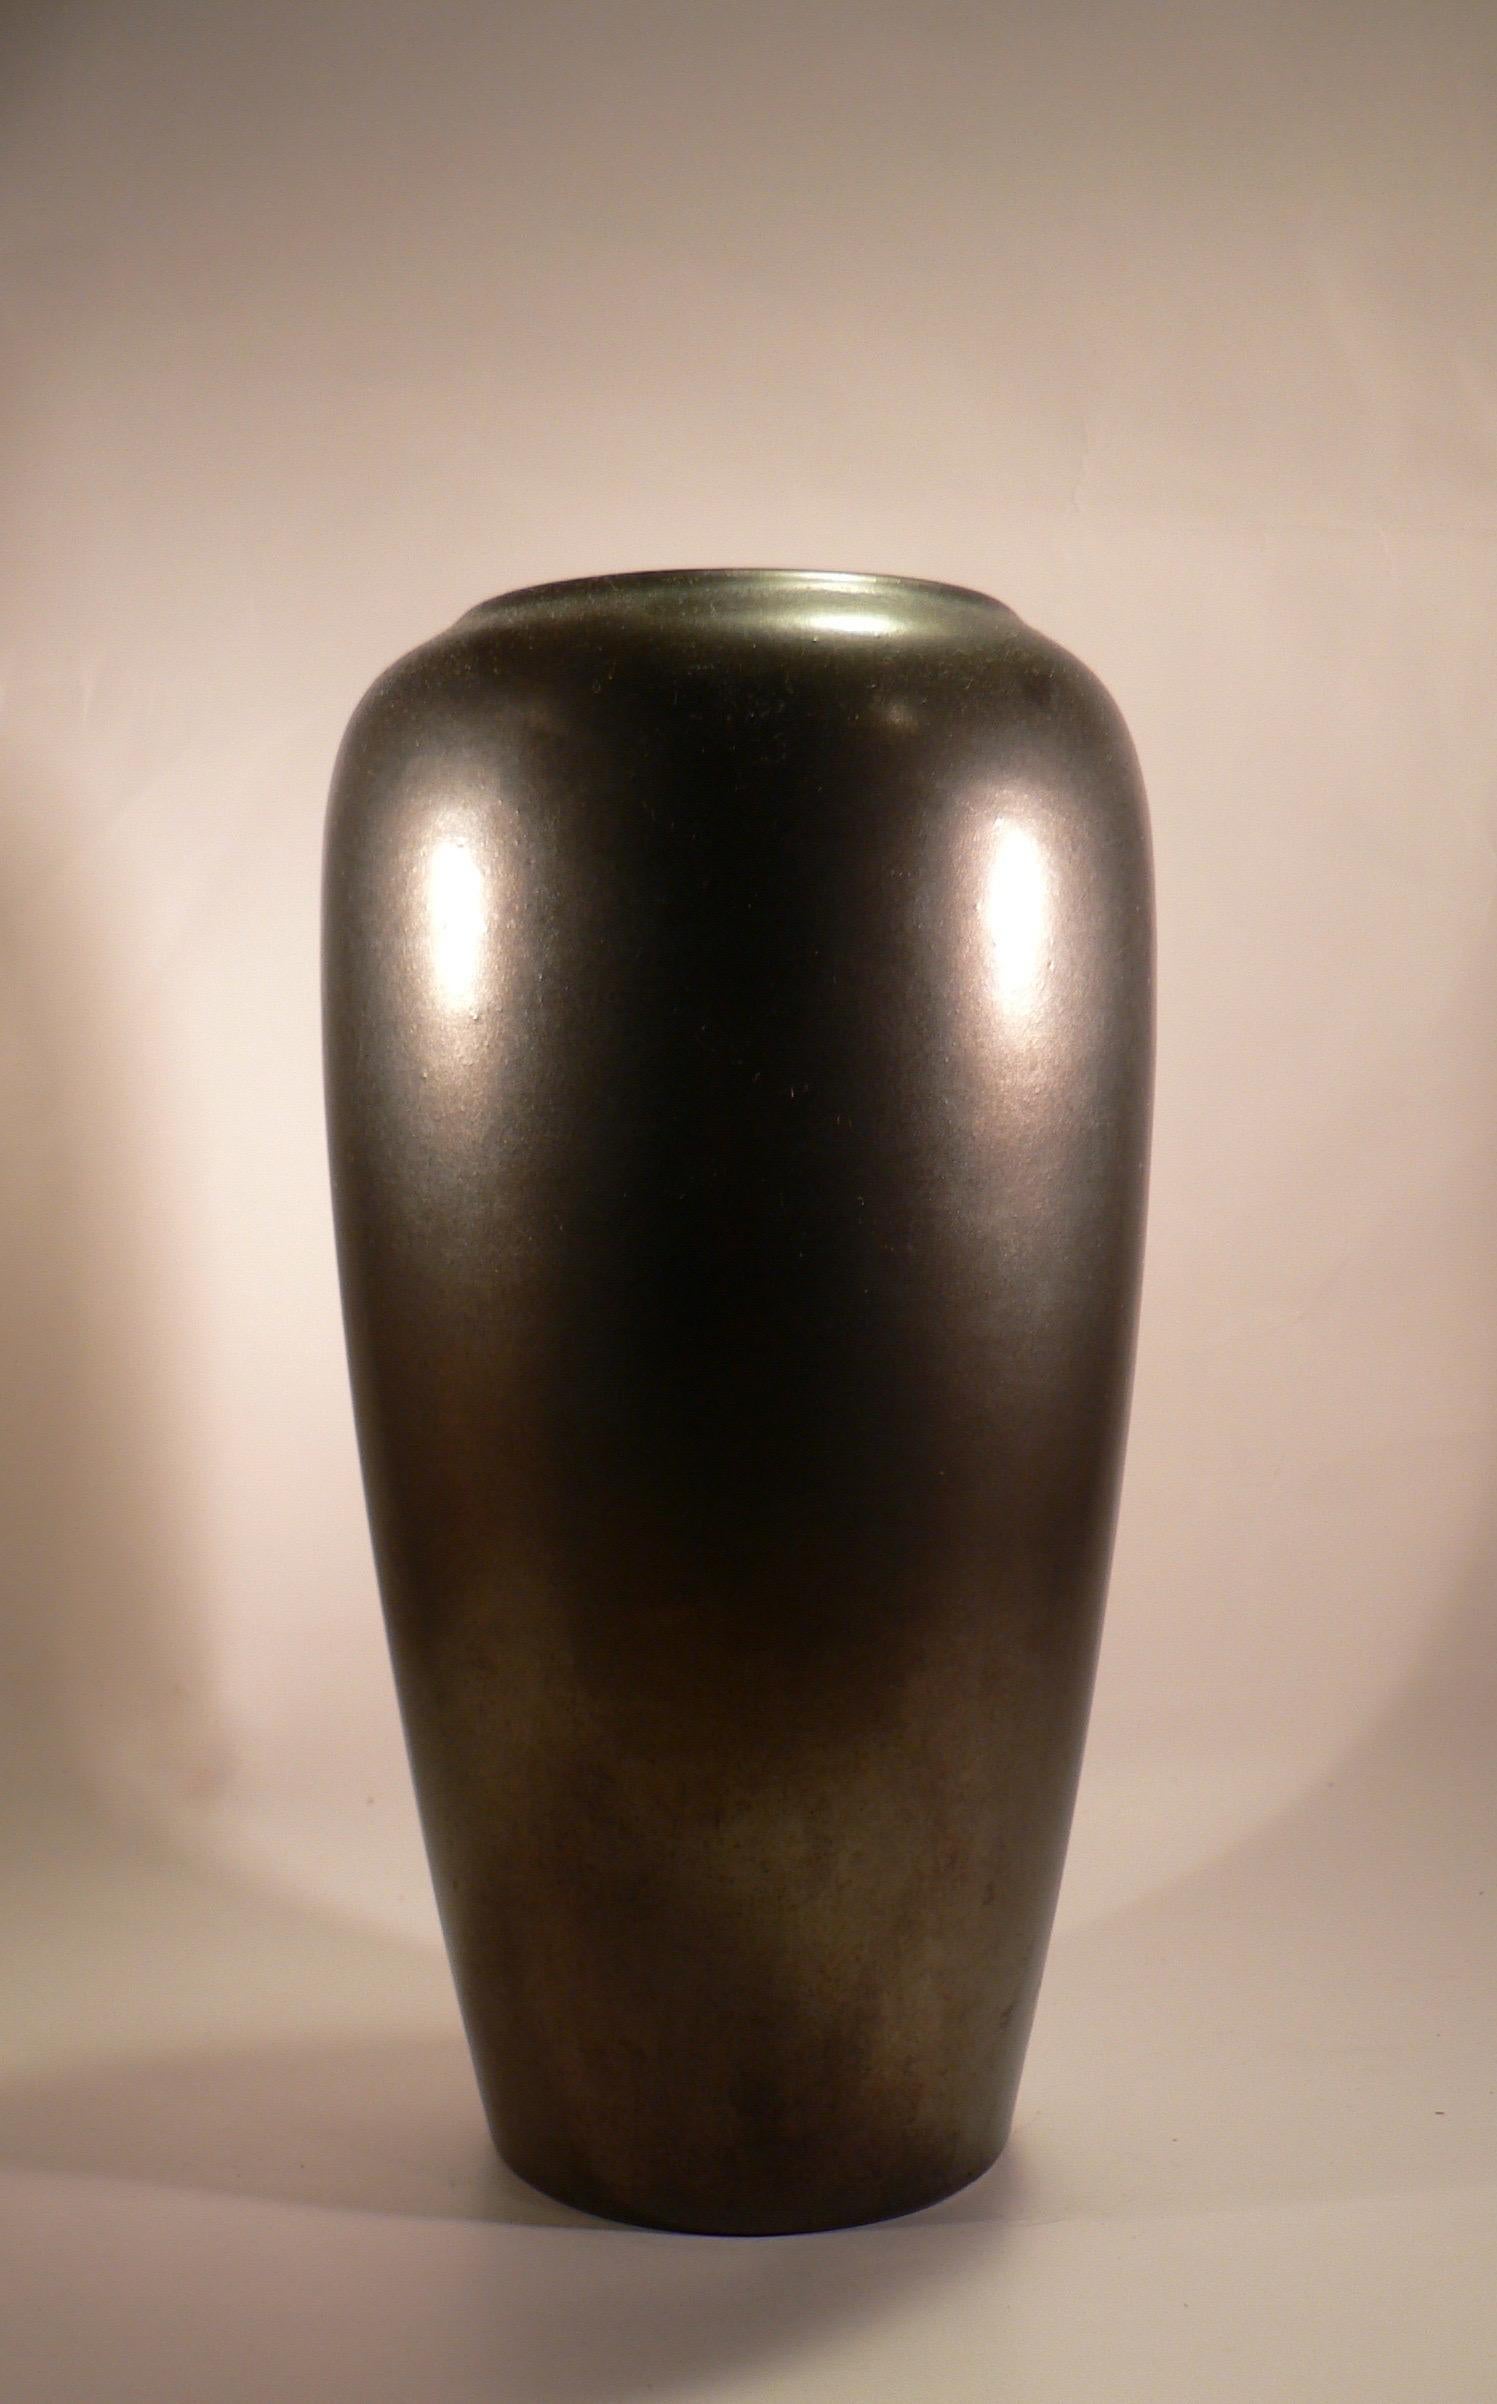 Vase en céramique émaillée noire des années 1970. Estampillé W.Germany.

Parfait état.

